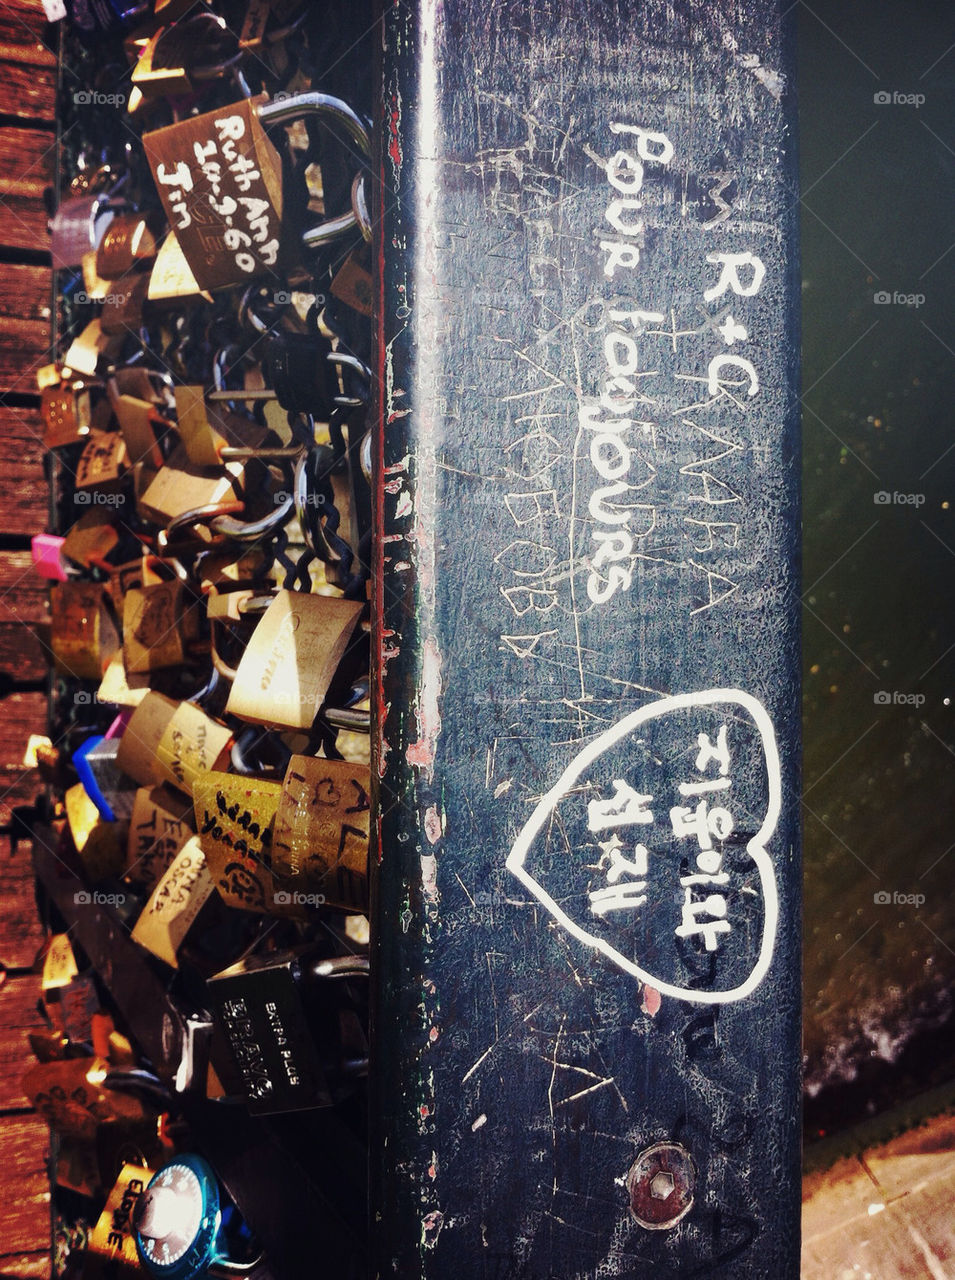 Lovers locks on the Pont de l'Archevêché in Paris, France.